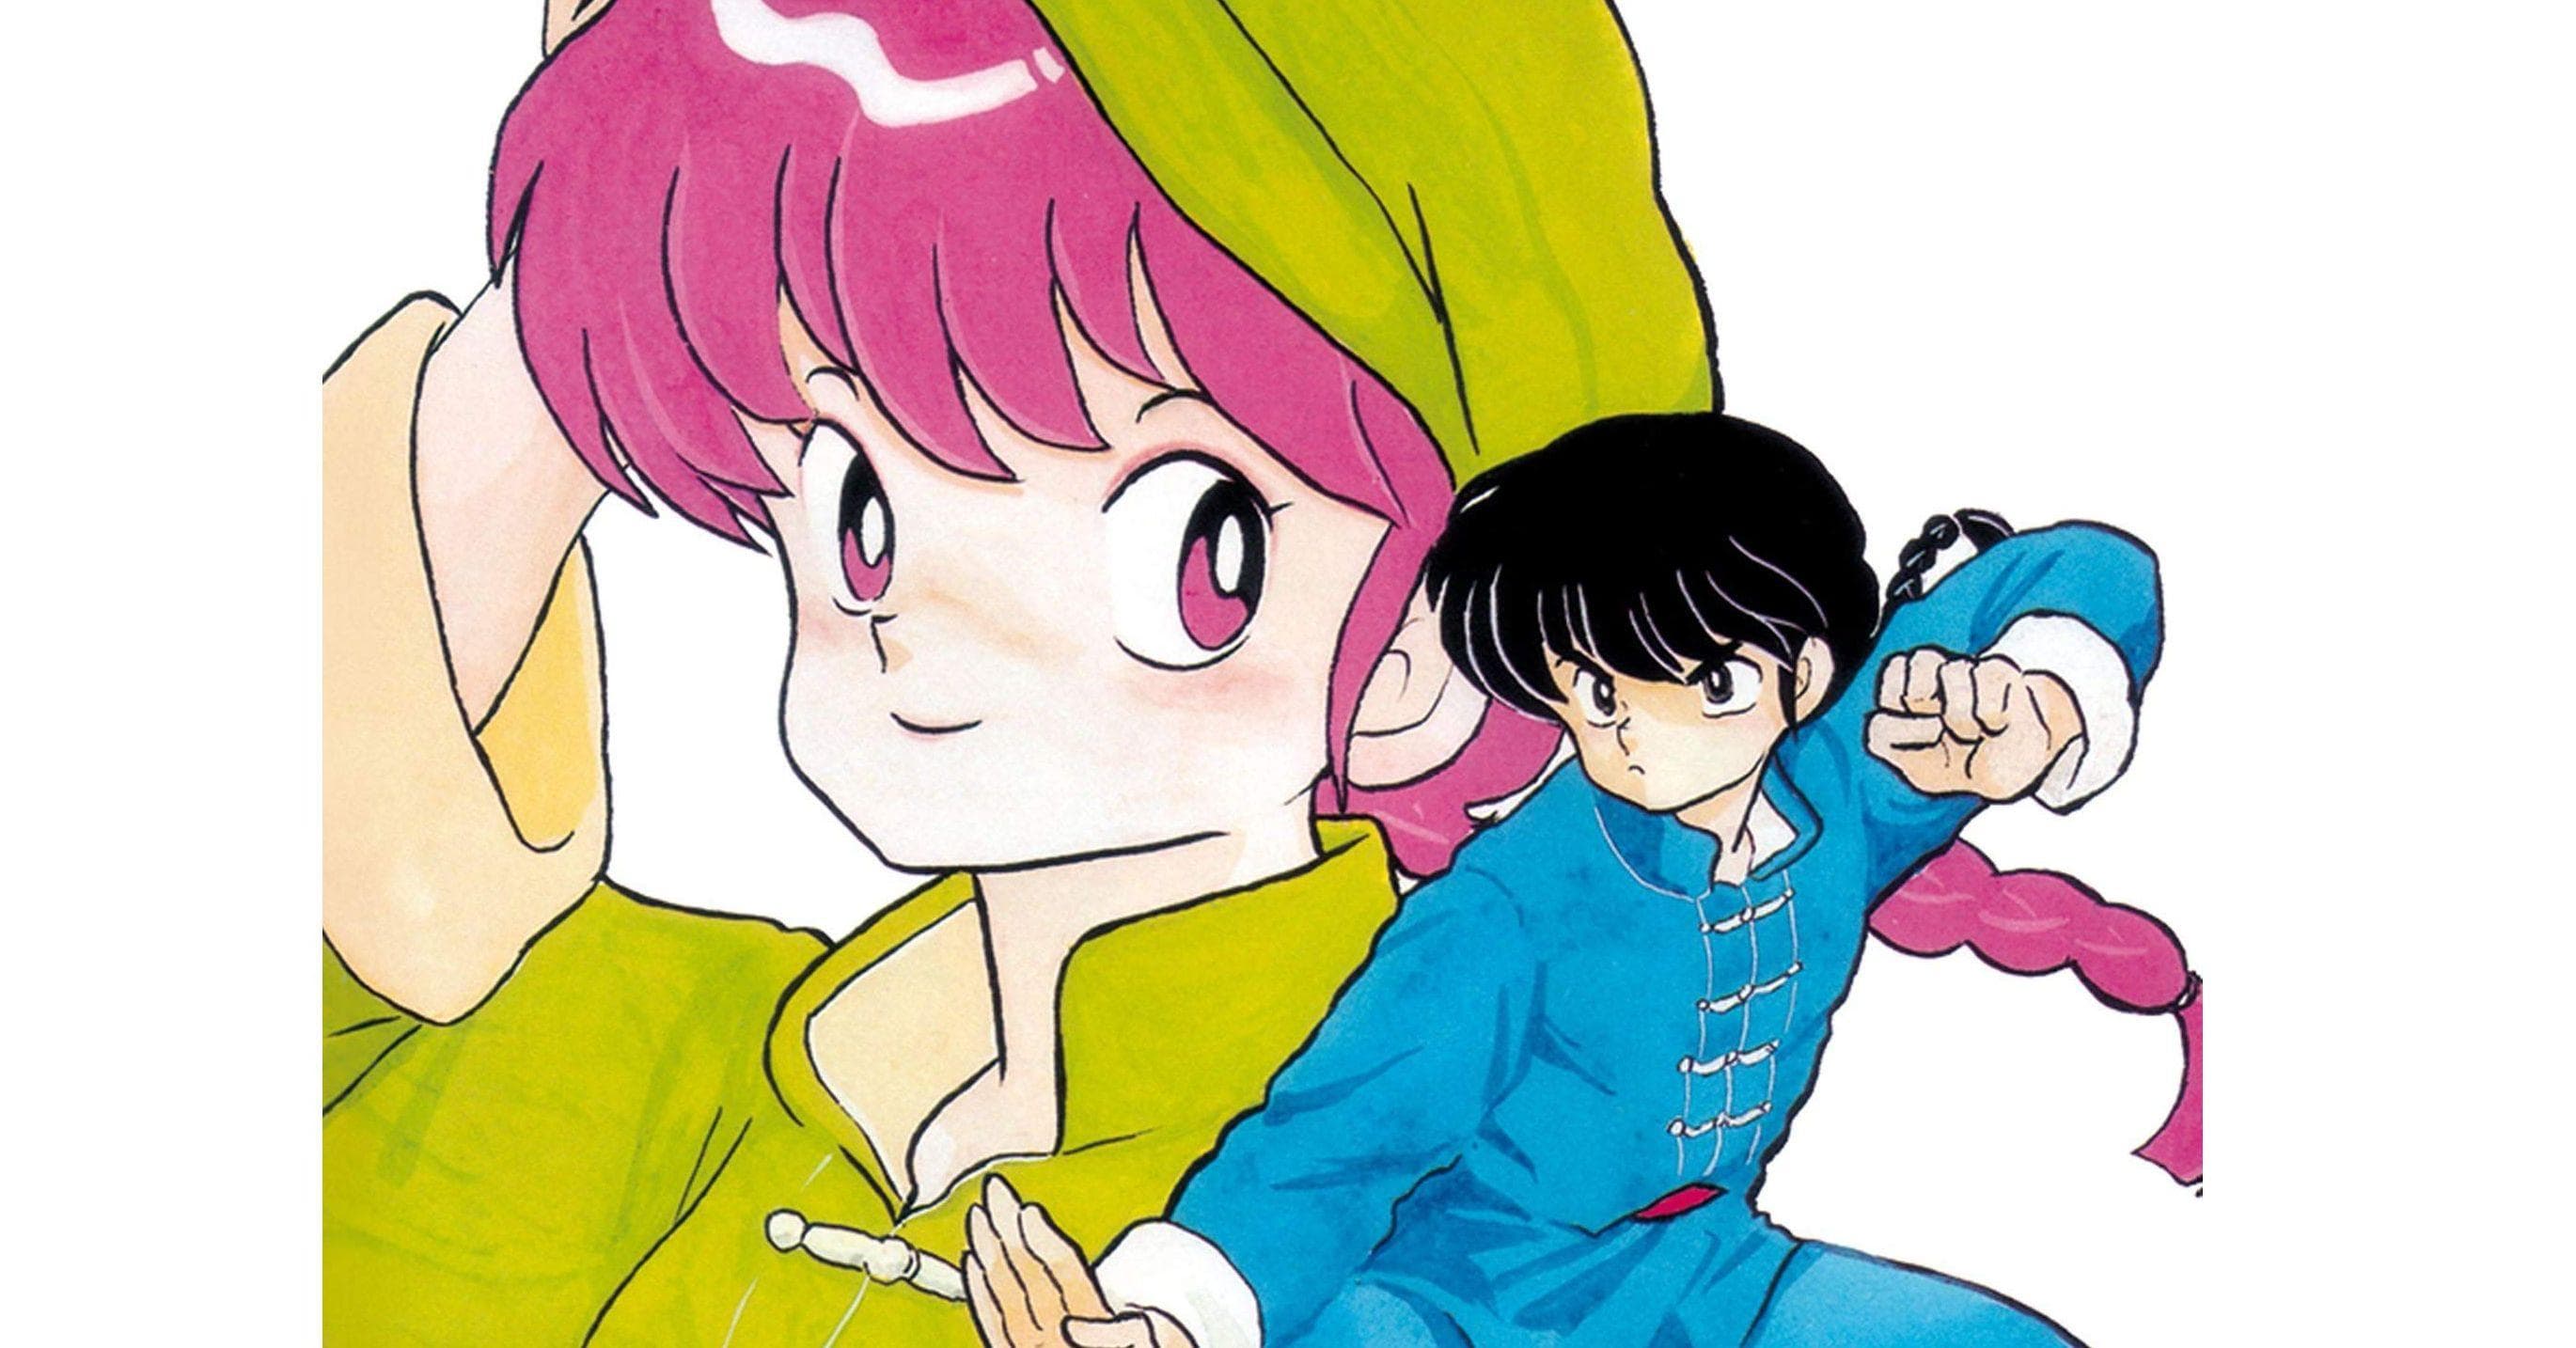 10] Best Spy Manga (Espionage Encouraged)